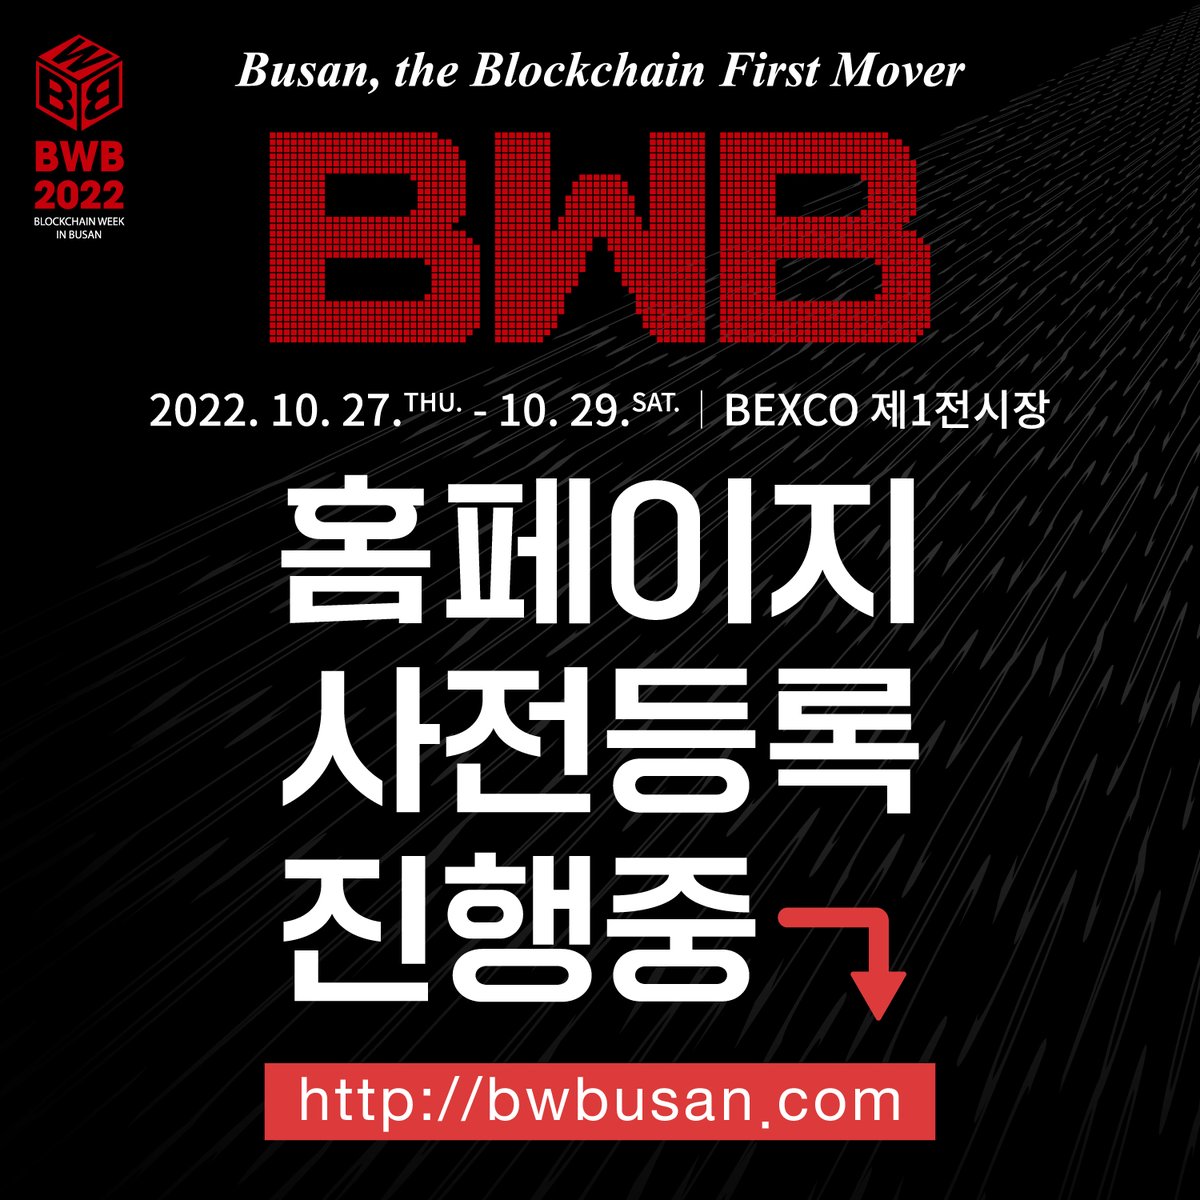 🔔BWB 2022는 지금, 사전등록 진행 중 🔔 Busan, the Blockchain First Mover 다양한 프로그램과 함께 'BWB 2022'가 개최됩니다! 사전참관 등록하시고, 3일간 무료 참관하세요~~ 📍일자 : 2022.10.27.(목) ~ 10.29.(토) 📍장소 : 벡스코 제1전시장 📍홈페이지 : bwbusan.com